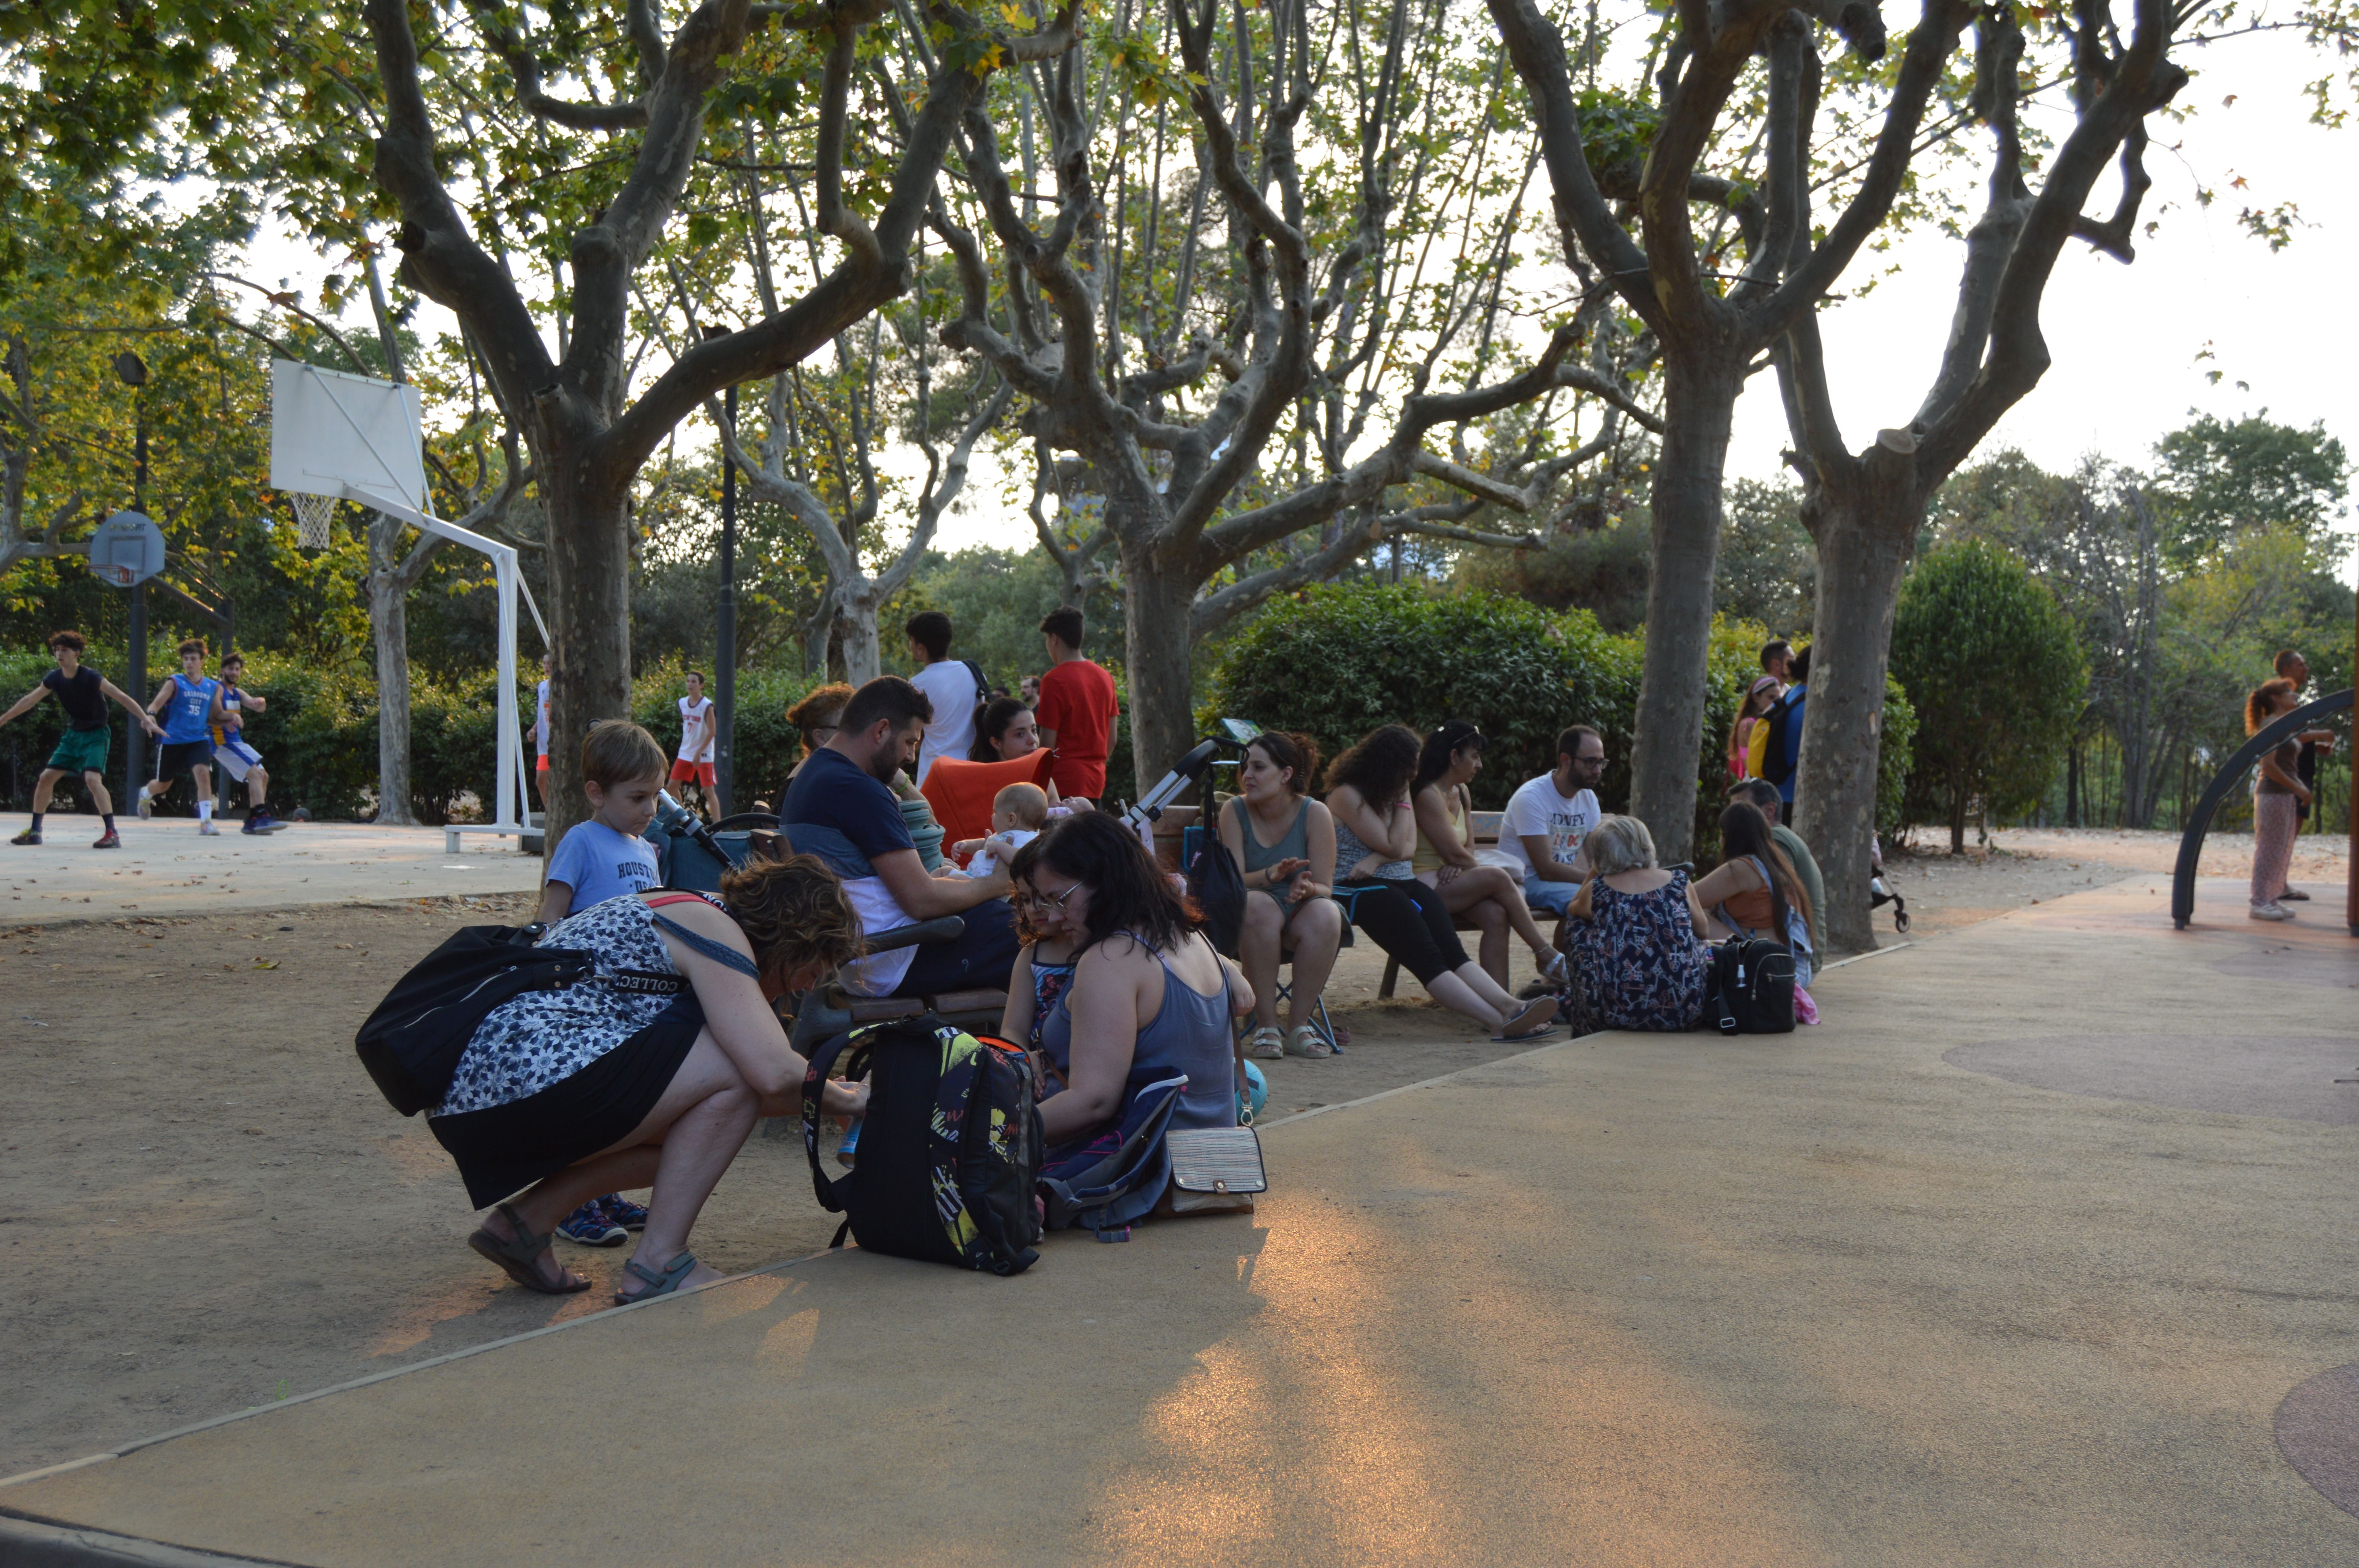 Refrescar-se al parc de Cordelles durant l'onada de calor a Cerdanyola. FOTO: Nora Muñoz Otero